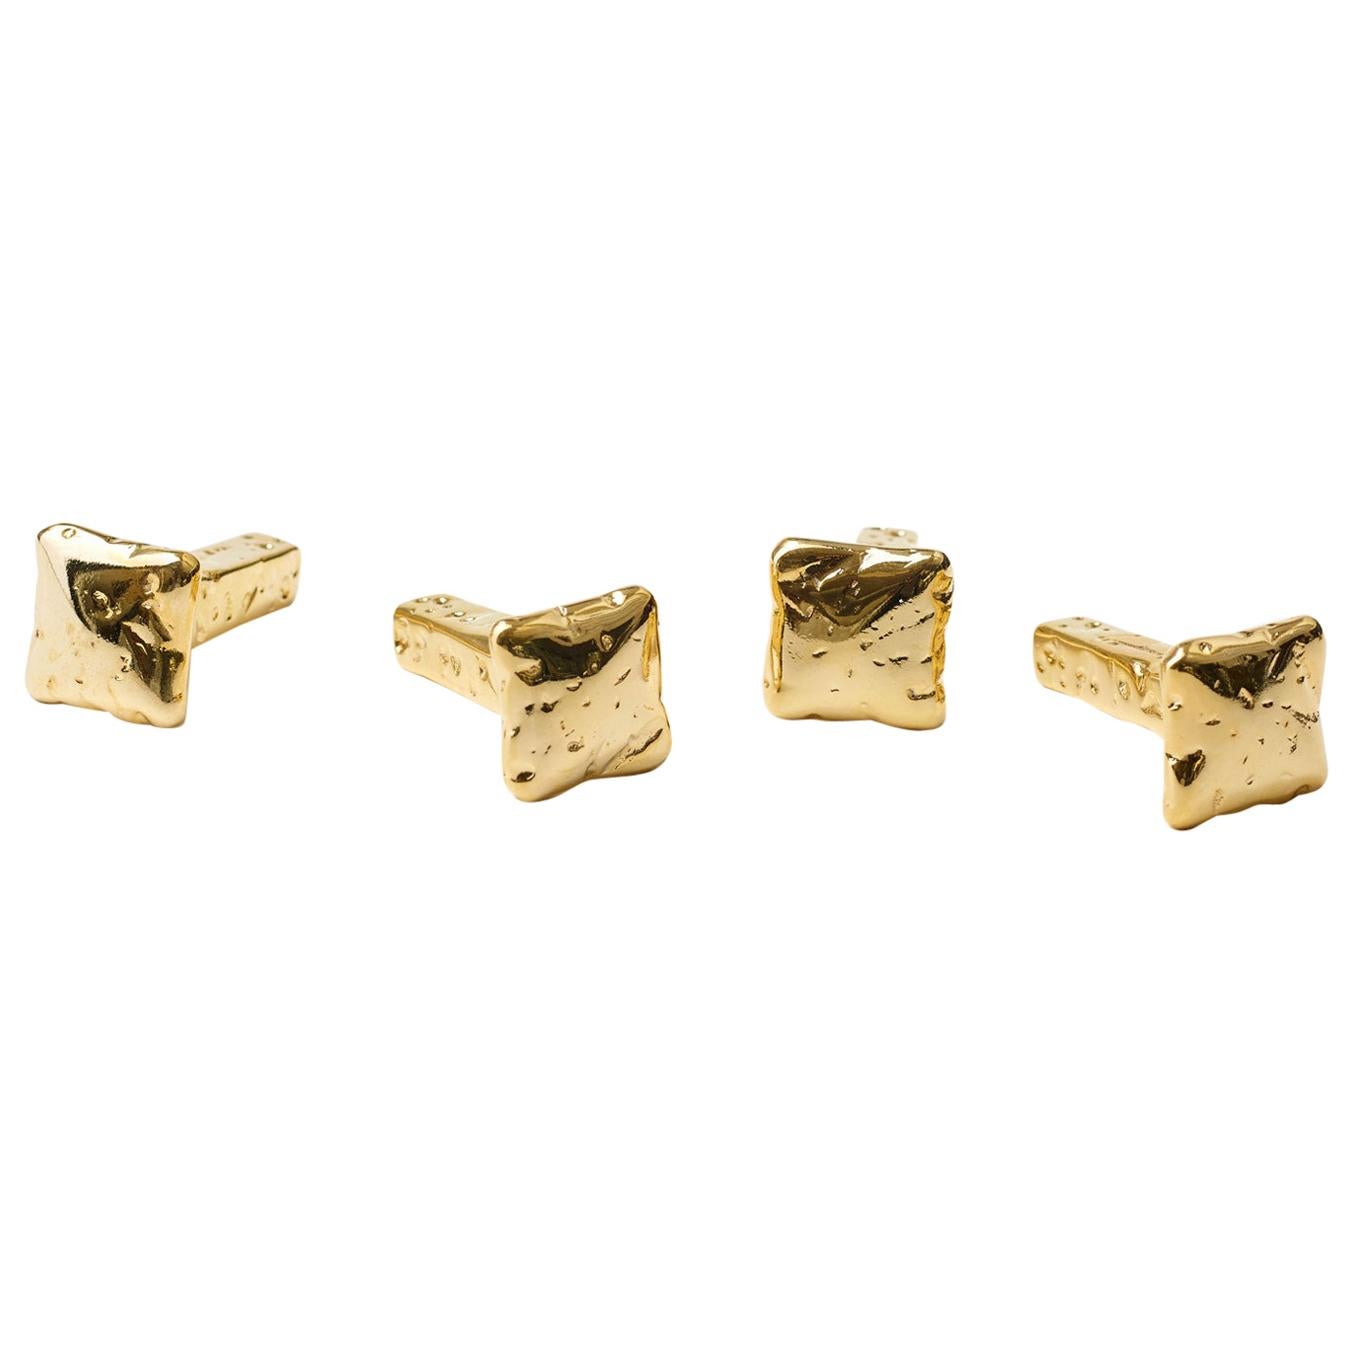 For Sale: Gold (24K Gold) Opinion Ciatti Chiodo Schiaccia Chiodo Set of 4 Clothes Hangers